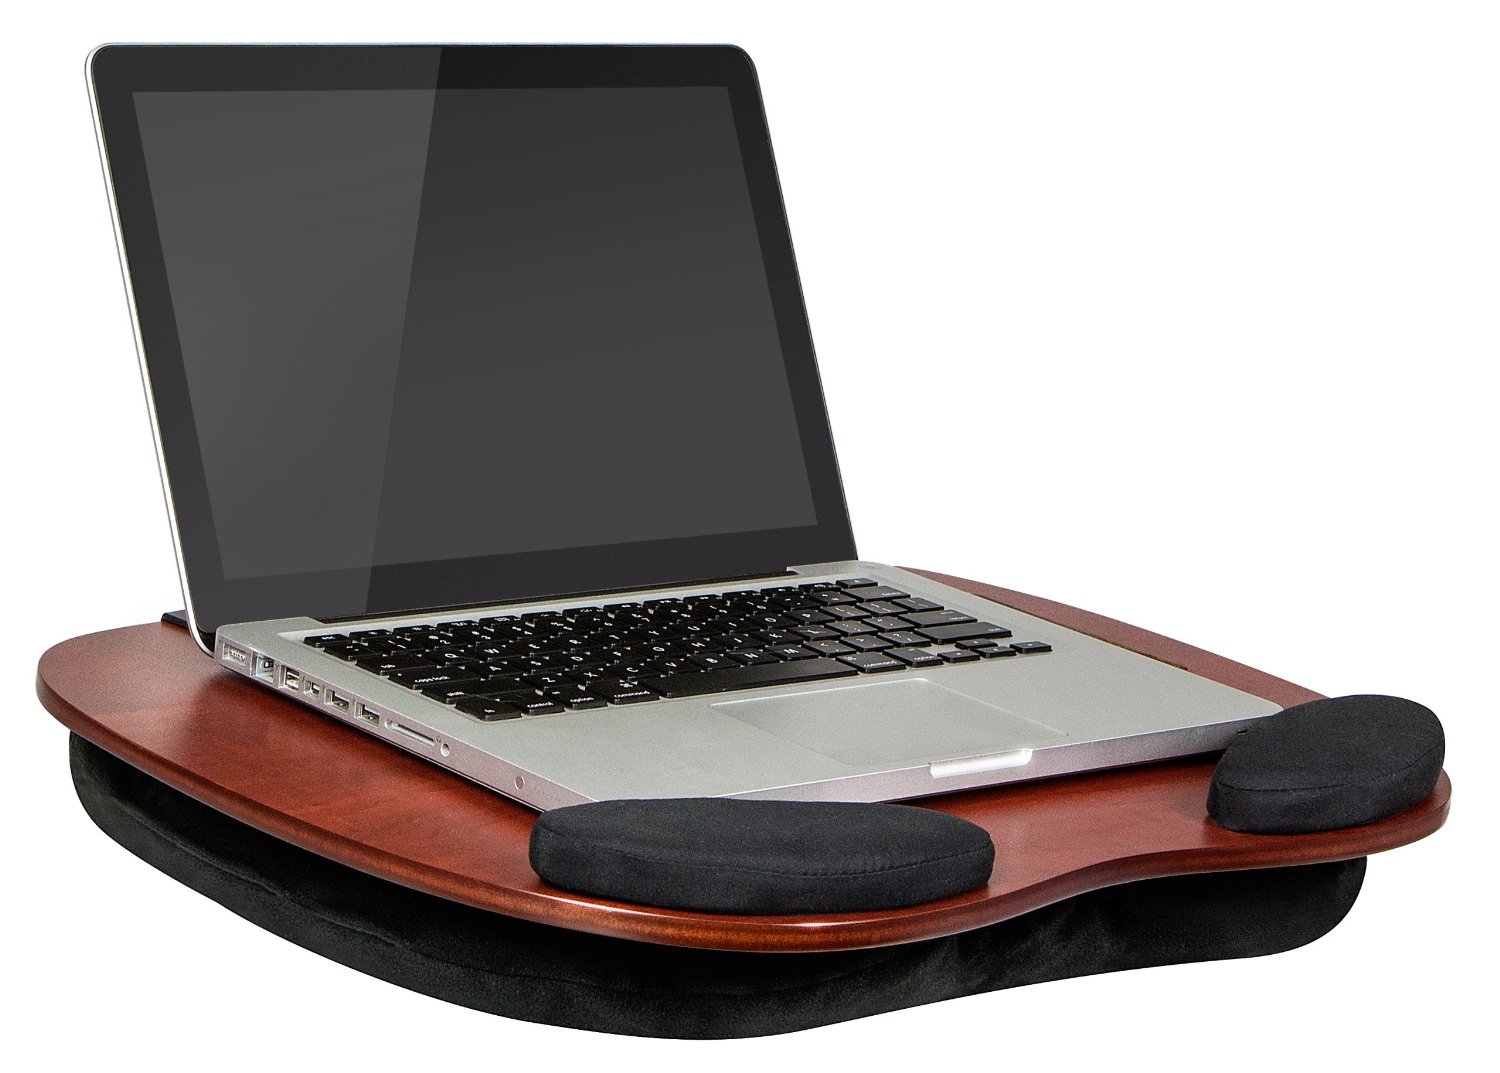 What is the best Laptop Lap Desk?